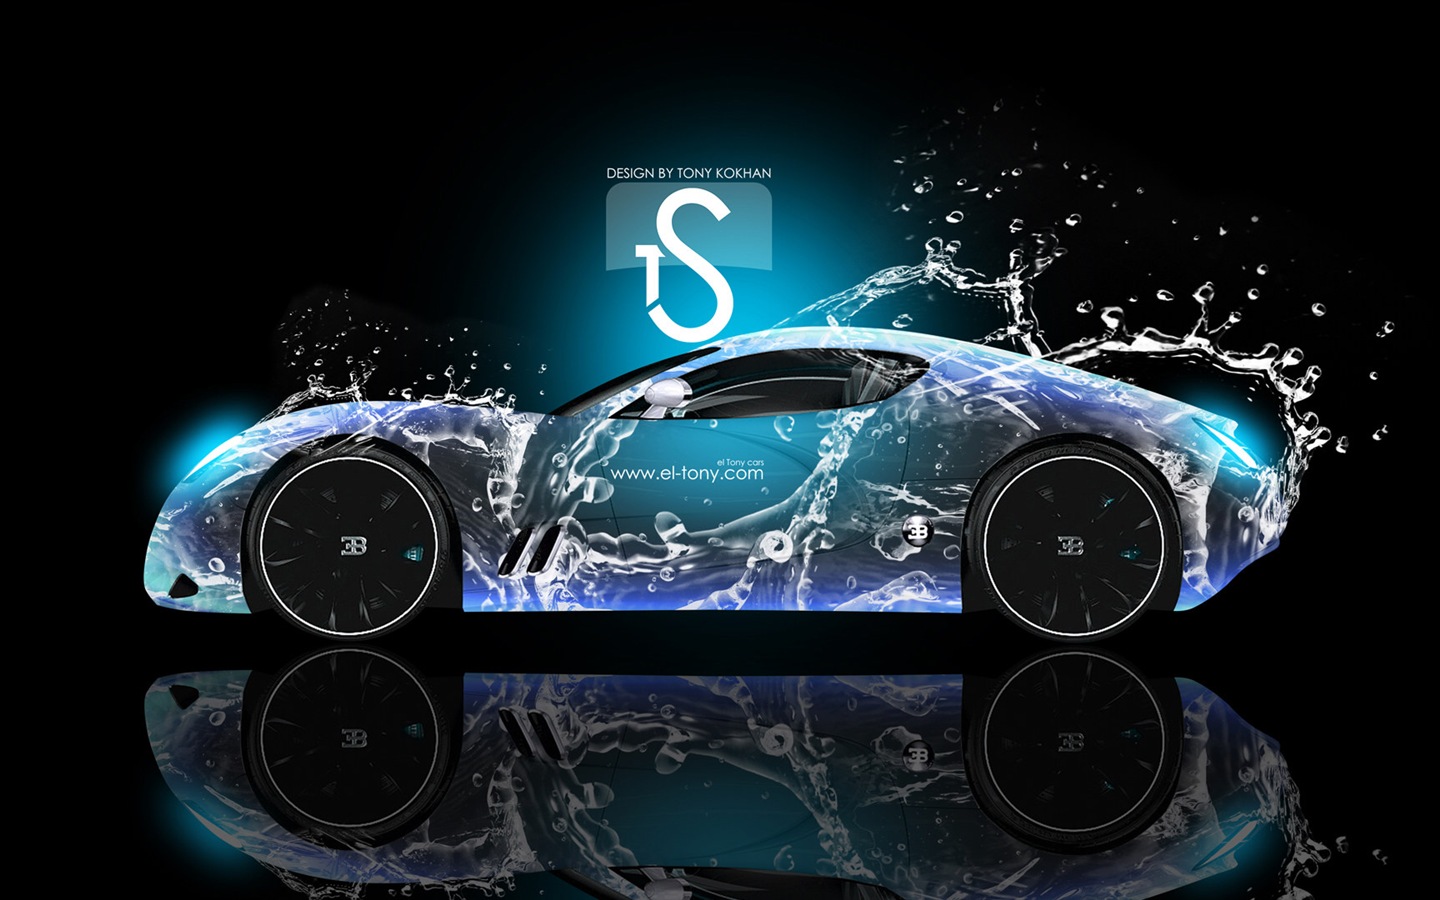 Wassertropfen spritzen, schönes Auto kreative Design Tapeten #10 - 1440x900